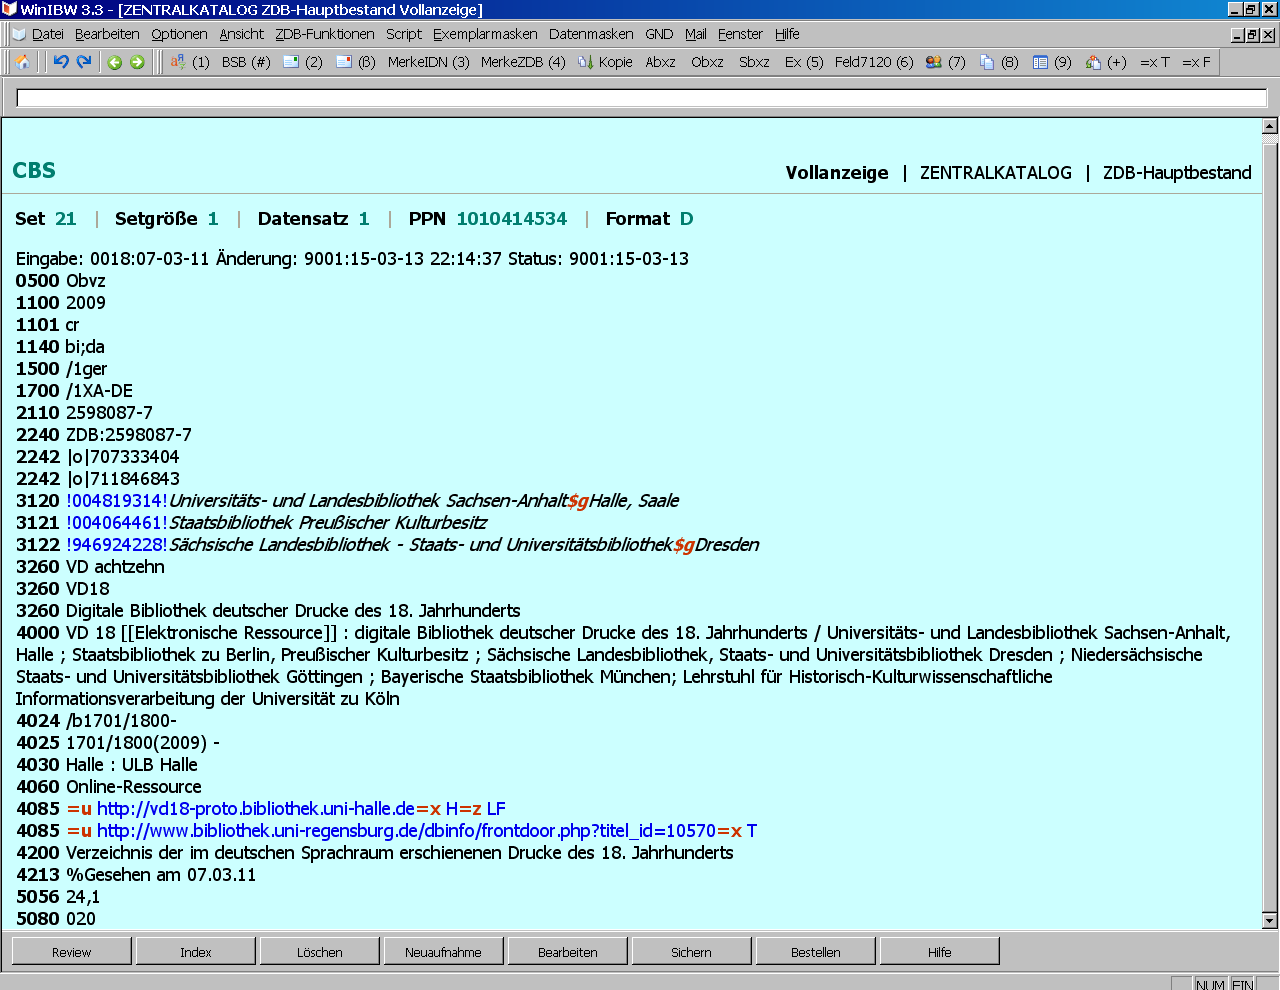 Weitere Merkmale einer Datenbank in der WinIBW Materialspezifischer Code für elektronische Ressourcen in 1101 (c = elektronische